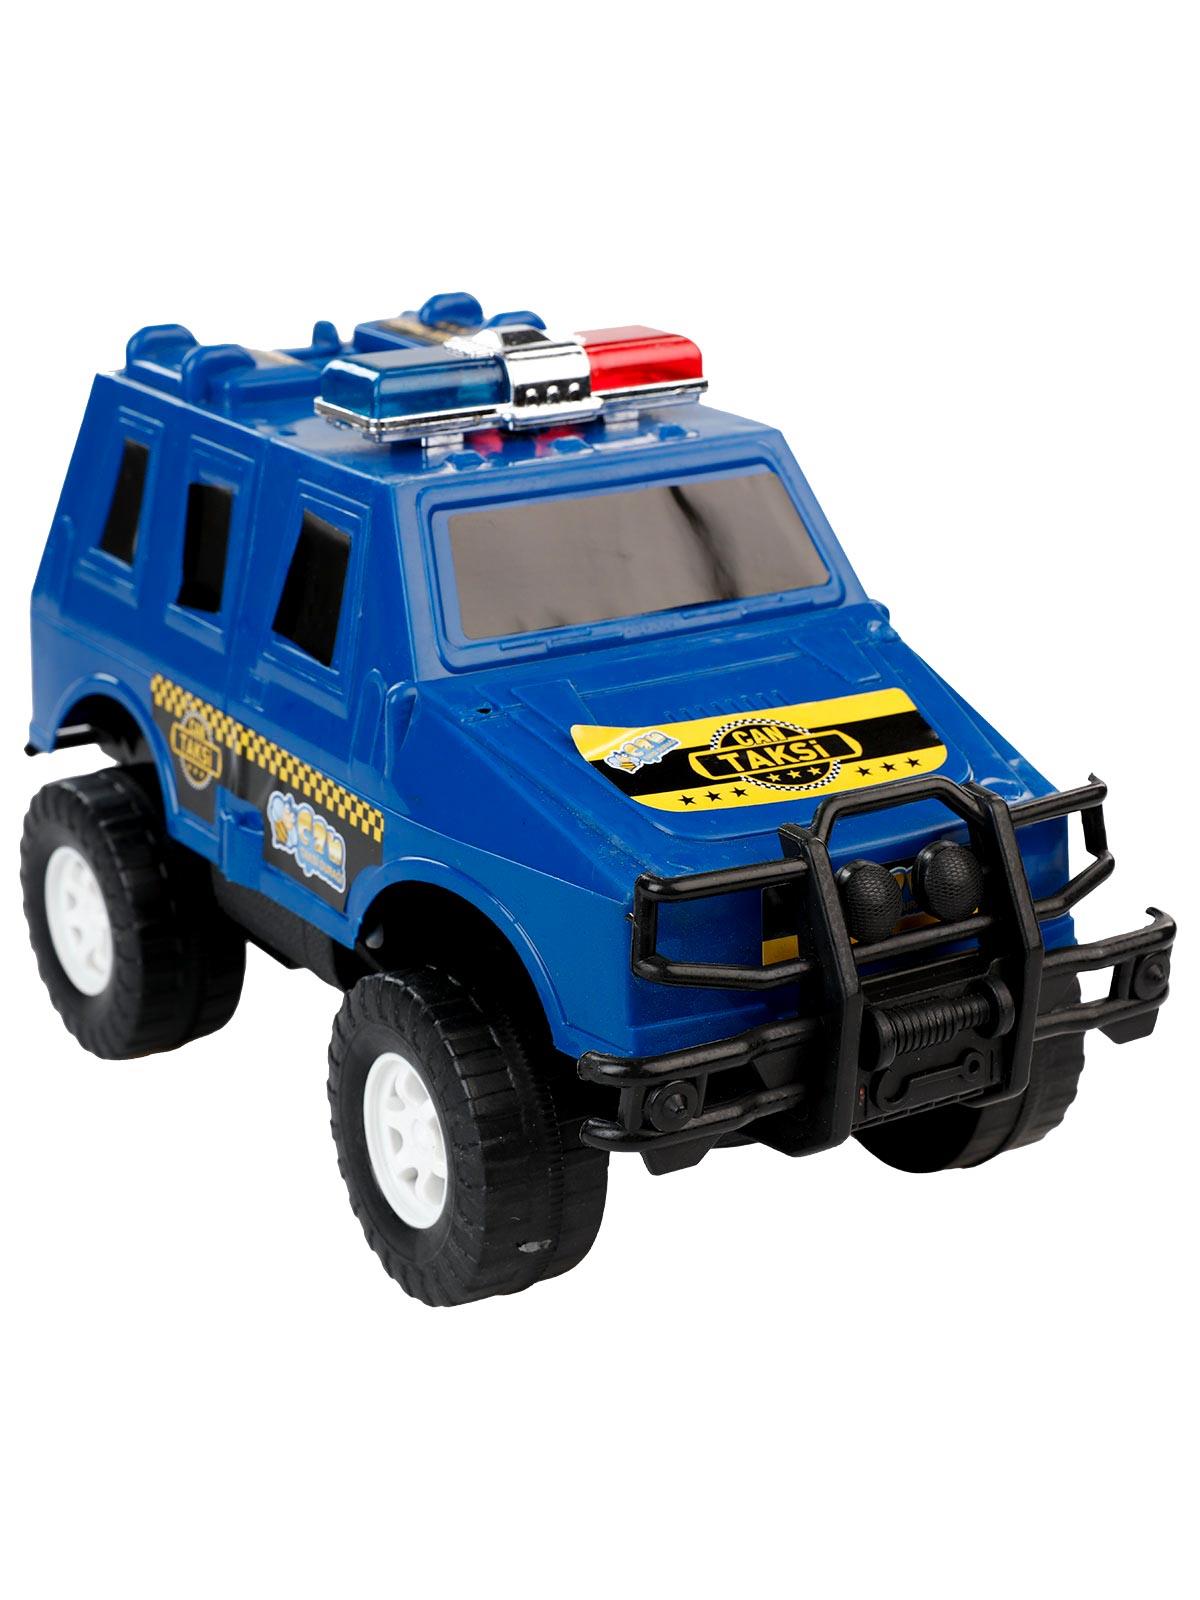 Can Oyuncak Sürtmeli Polis Arabası Mavi